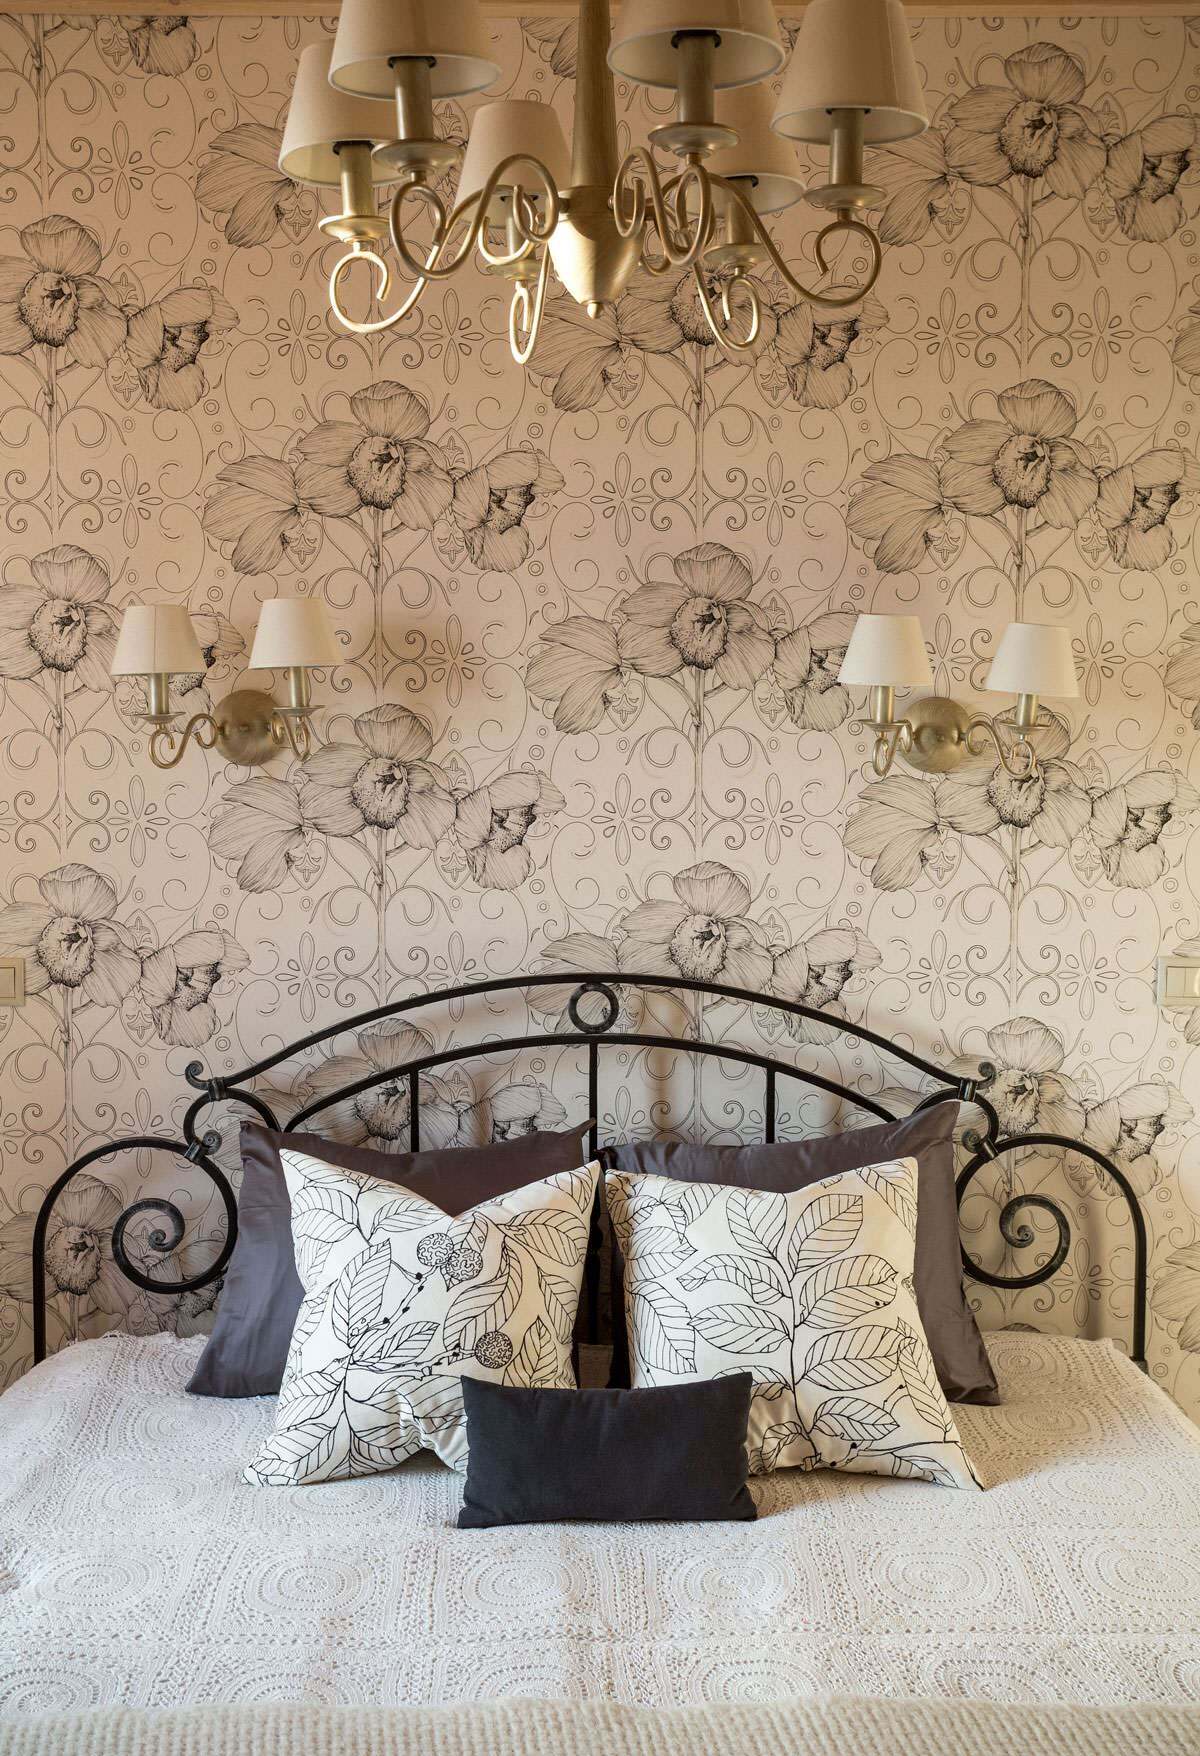 Интерьер спальни cветильниками над кроватью в стиле кантри